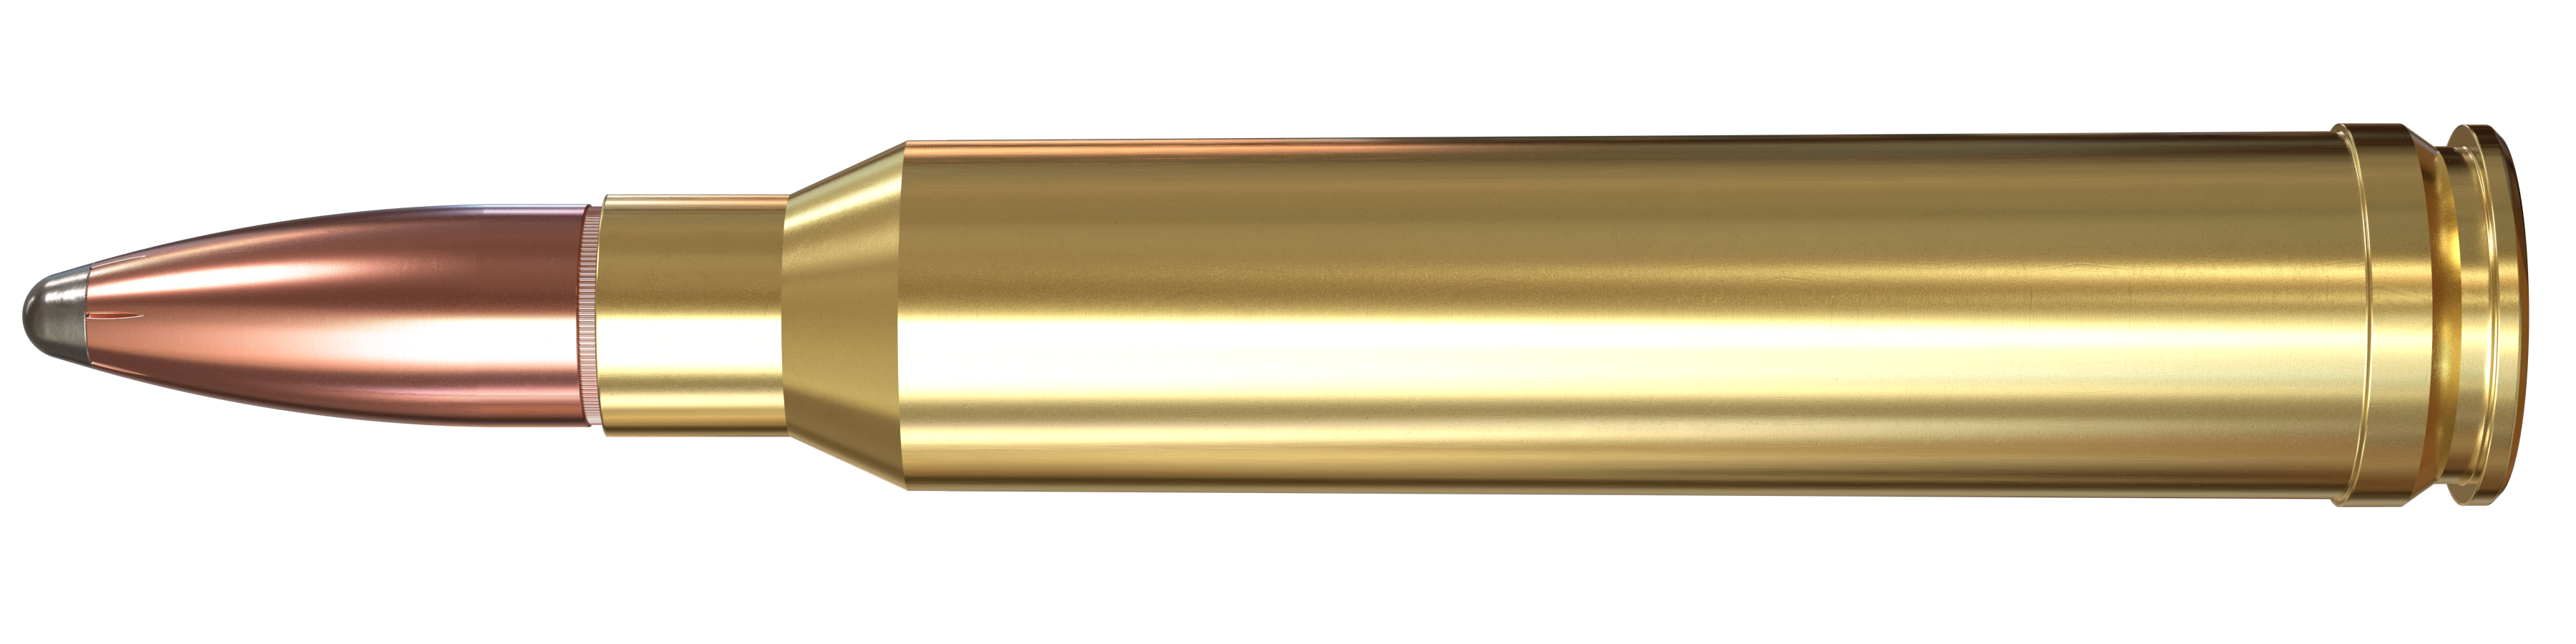 300 Winchester Magnum, 150 Grain Features